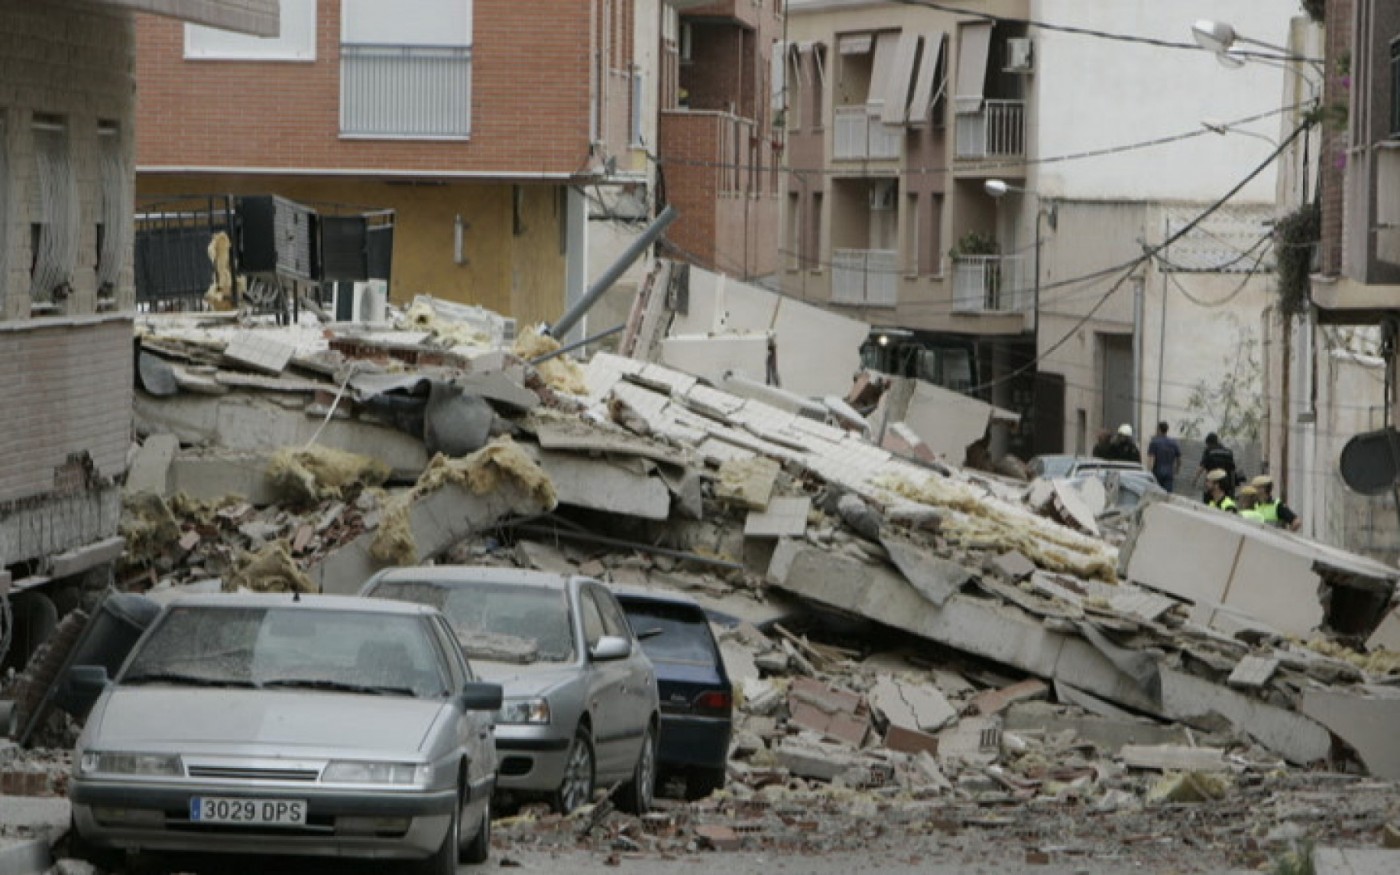 GALERÍA | Las imágenes de los terremotos de Lorca (I)